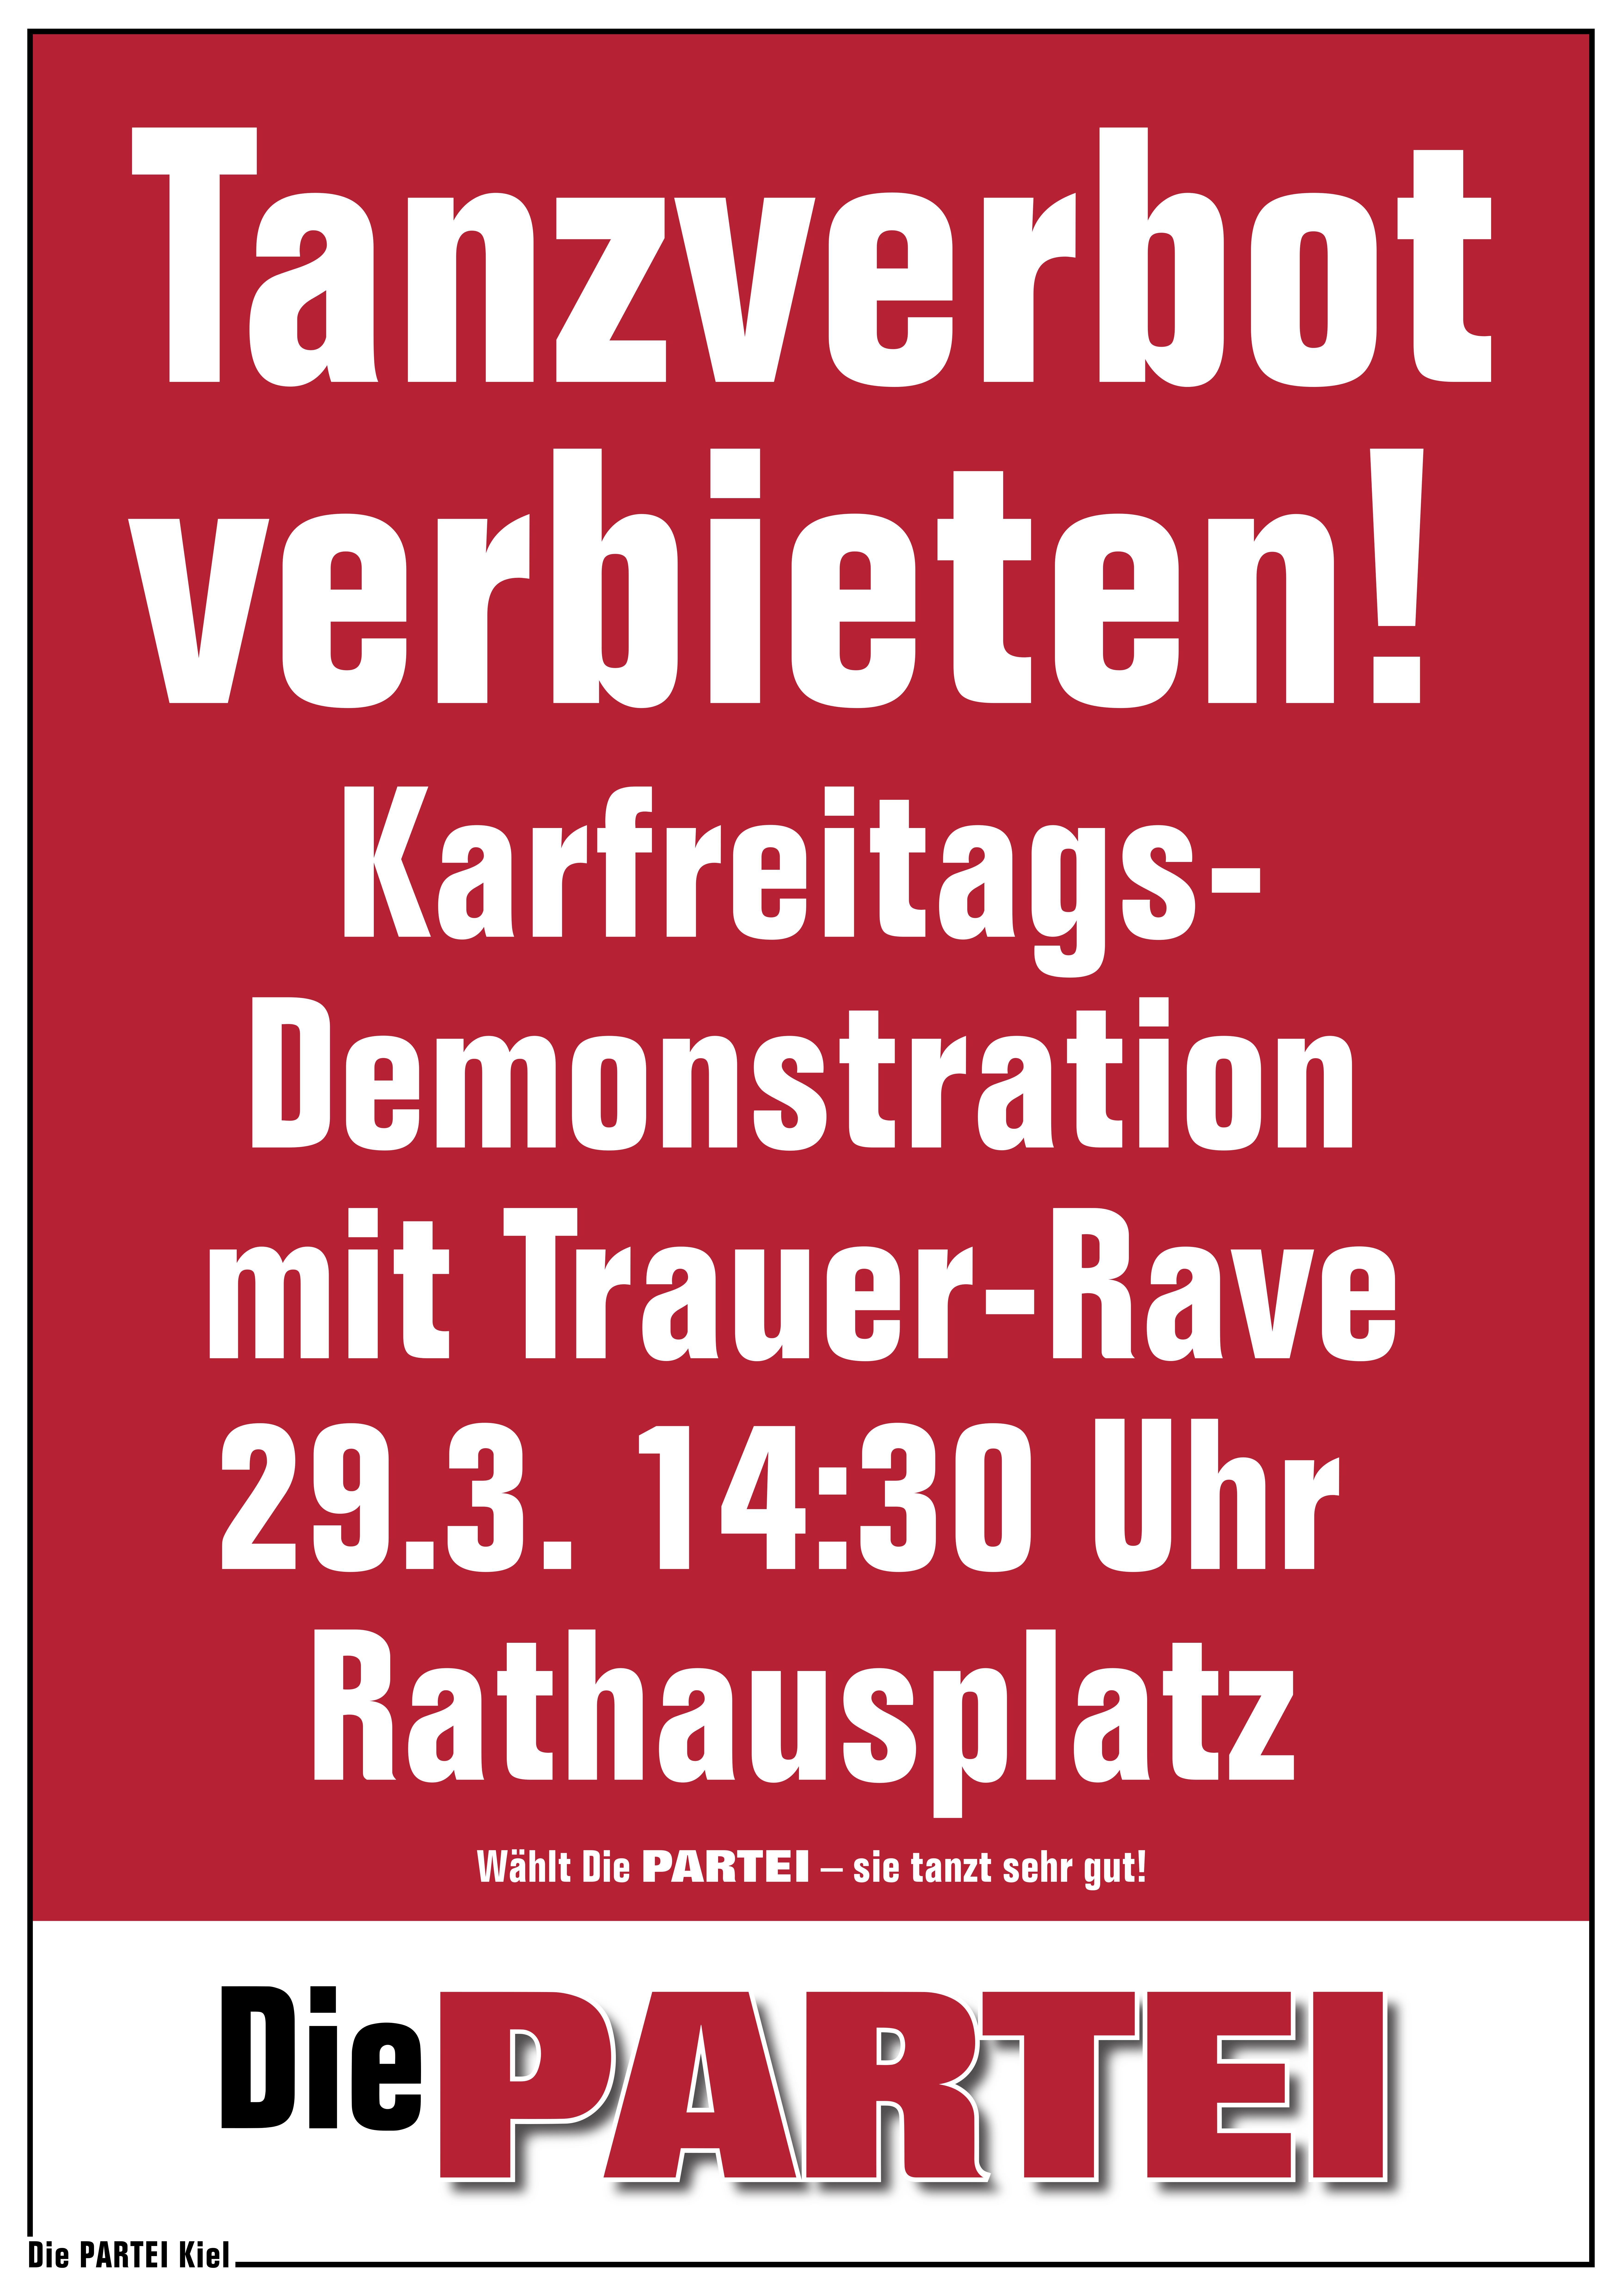 Text im Bild: Tanzverbot verbieten! Karfreitags-Demonstration mit Trauer-Rave; 29.3. 14:30 Uhr Rathausplatz